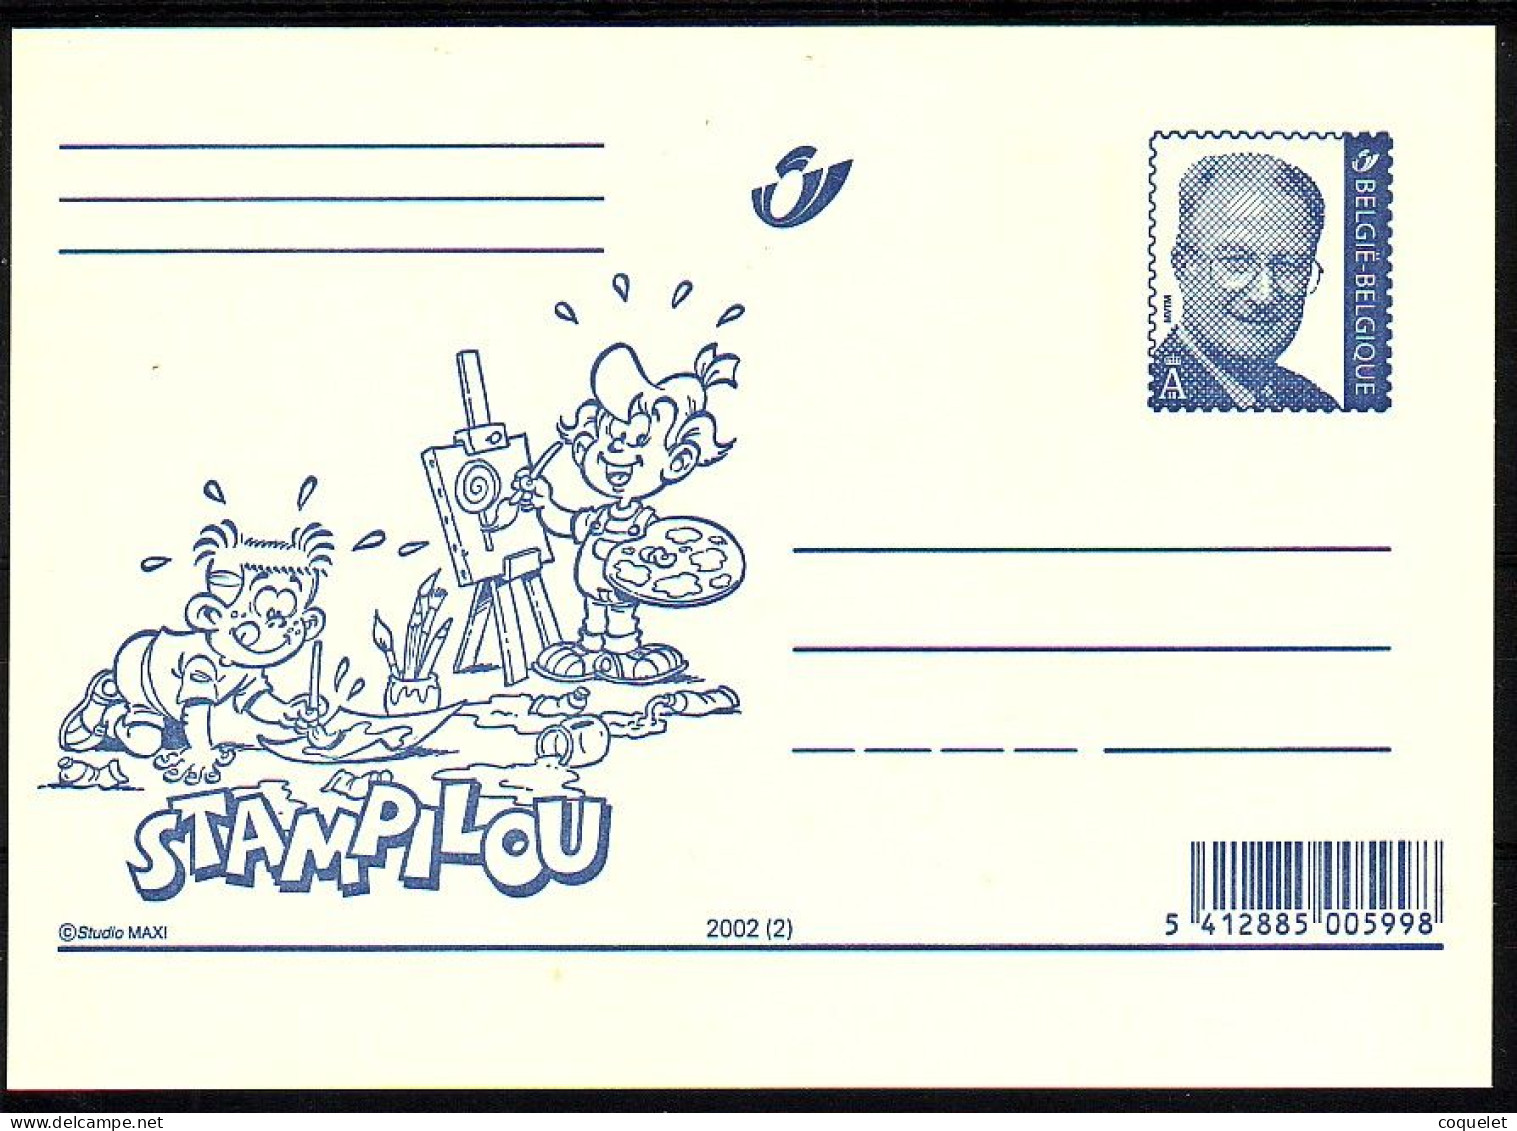 Belgique - Entiers Postaux - Cartes Illustrées N° 82 # STAMPILOU  2 - Stripsverhalen